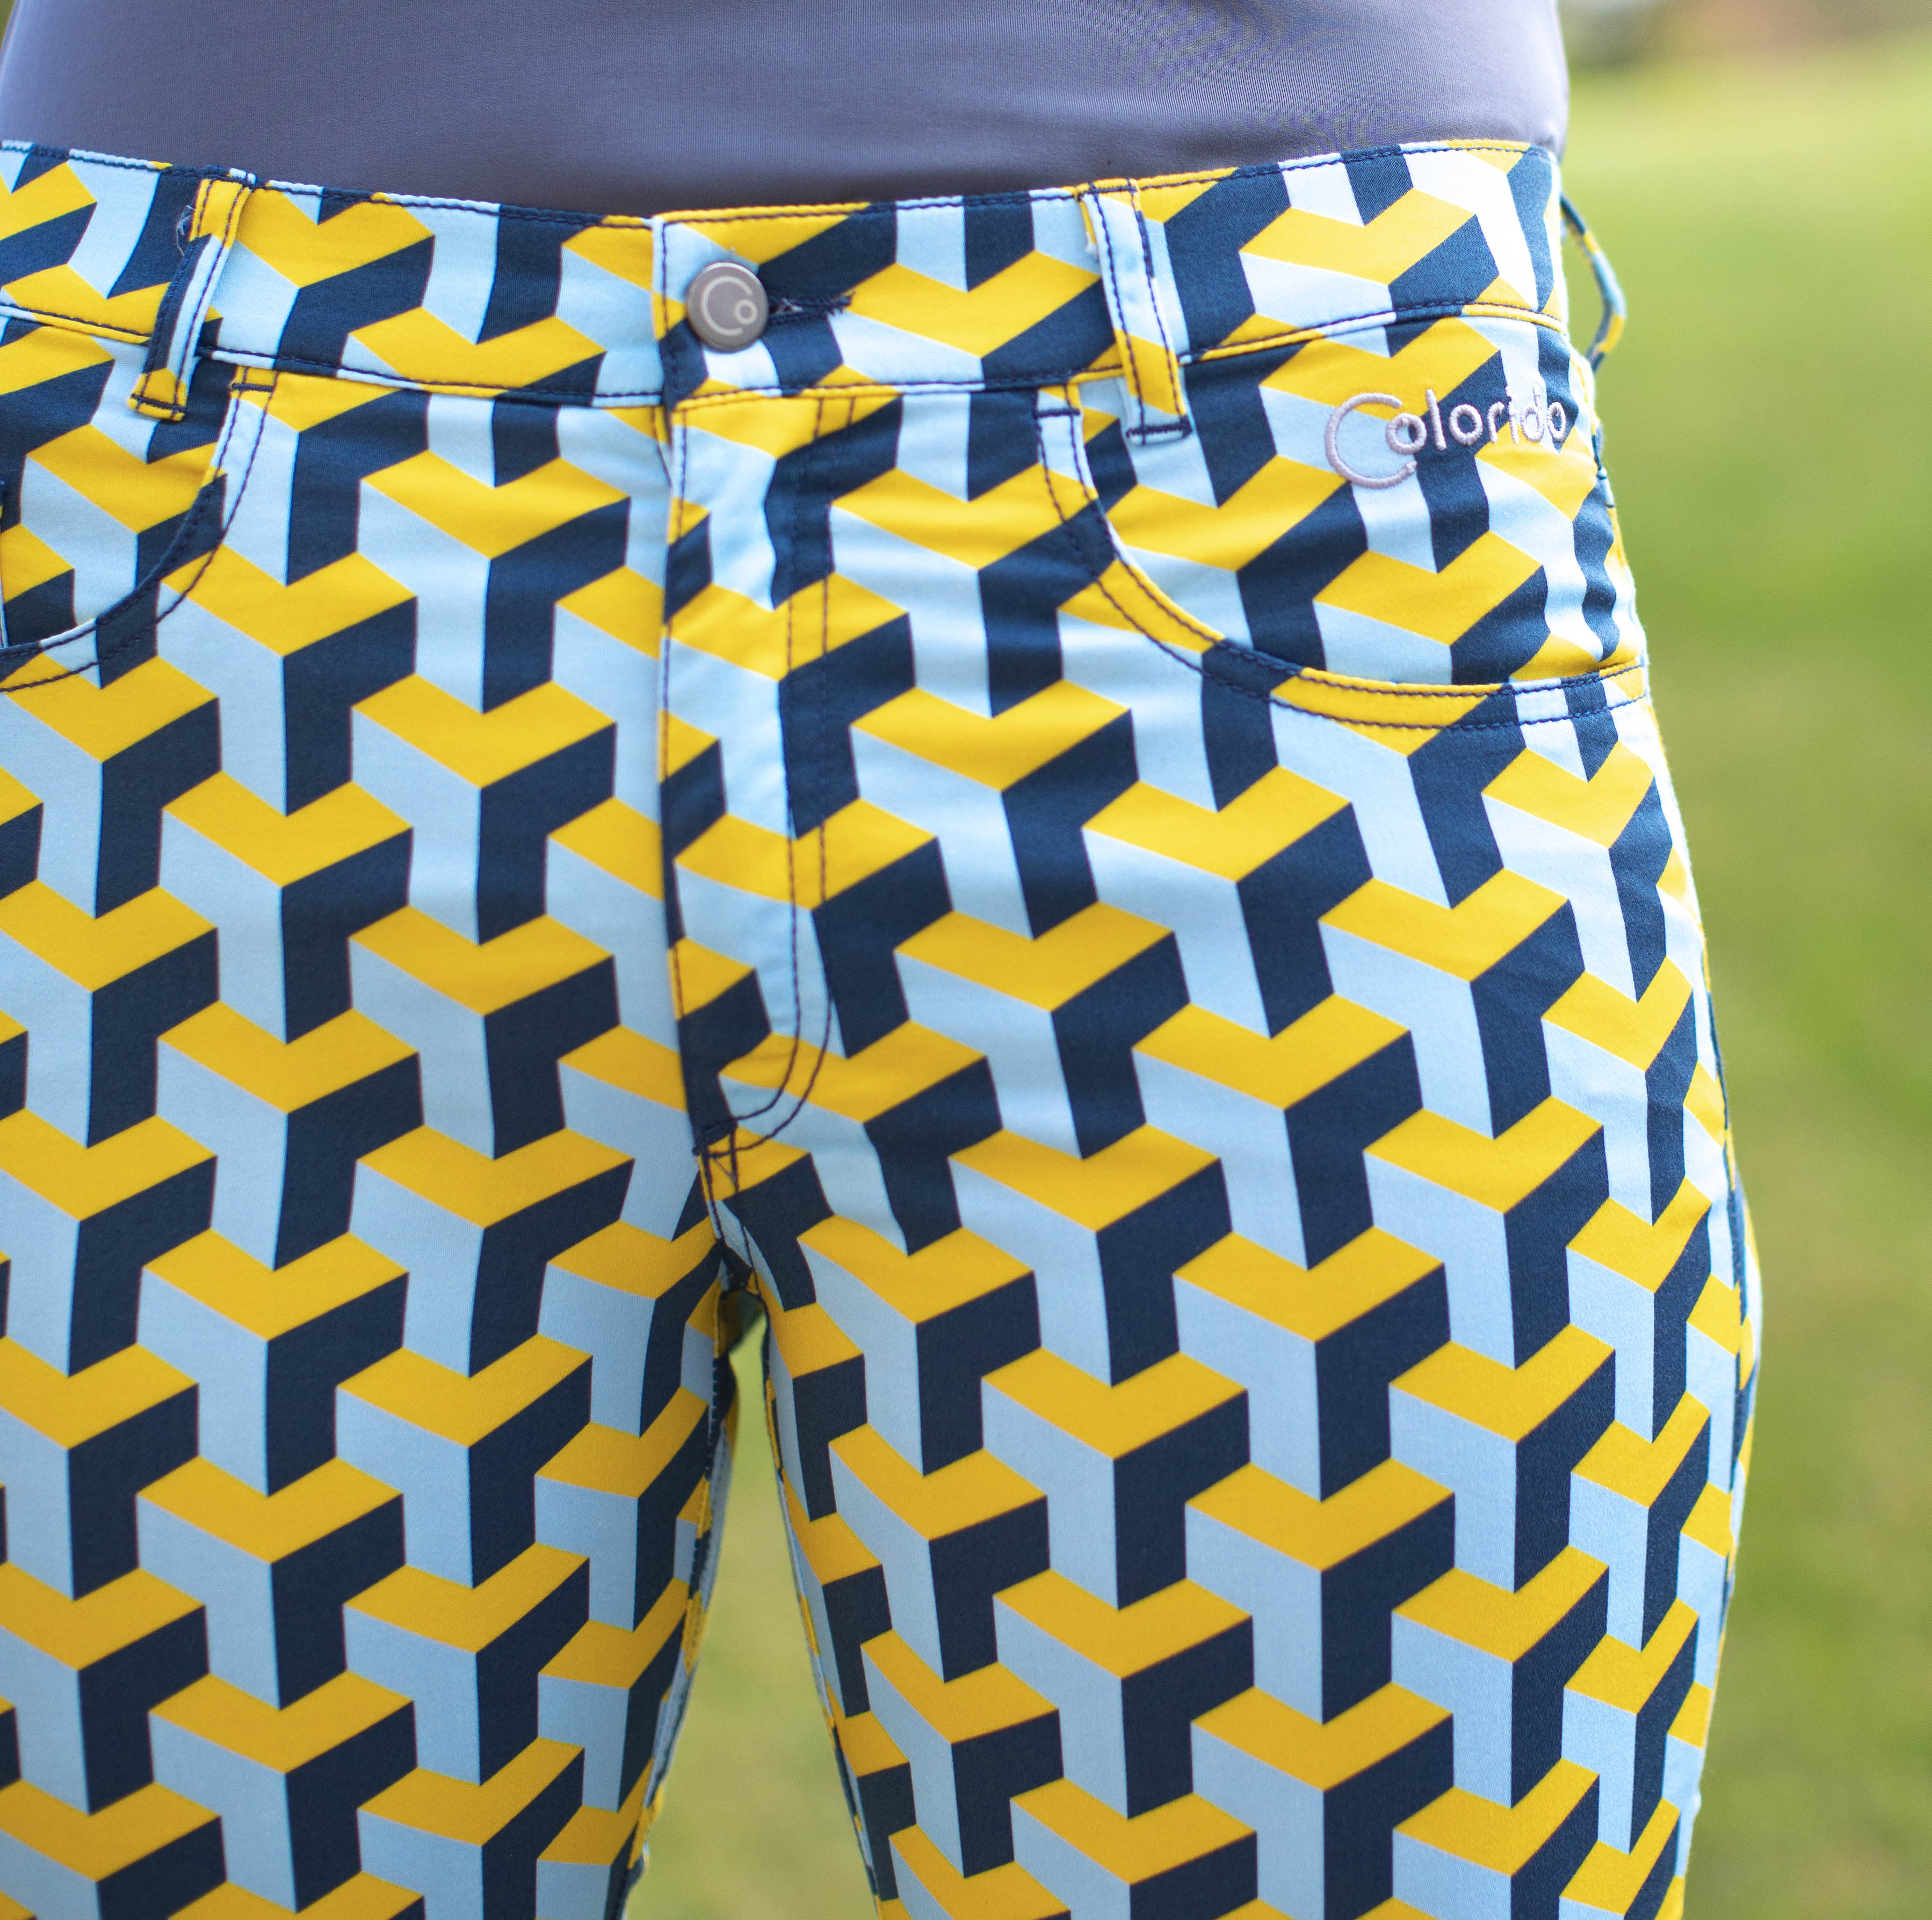 Dámské žluto-modré golfové kalhoty Colorido Velikost: S, Délka nohavic: KLASICKÁ, Barva: ŽLUTÁ